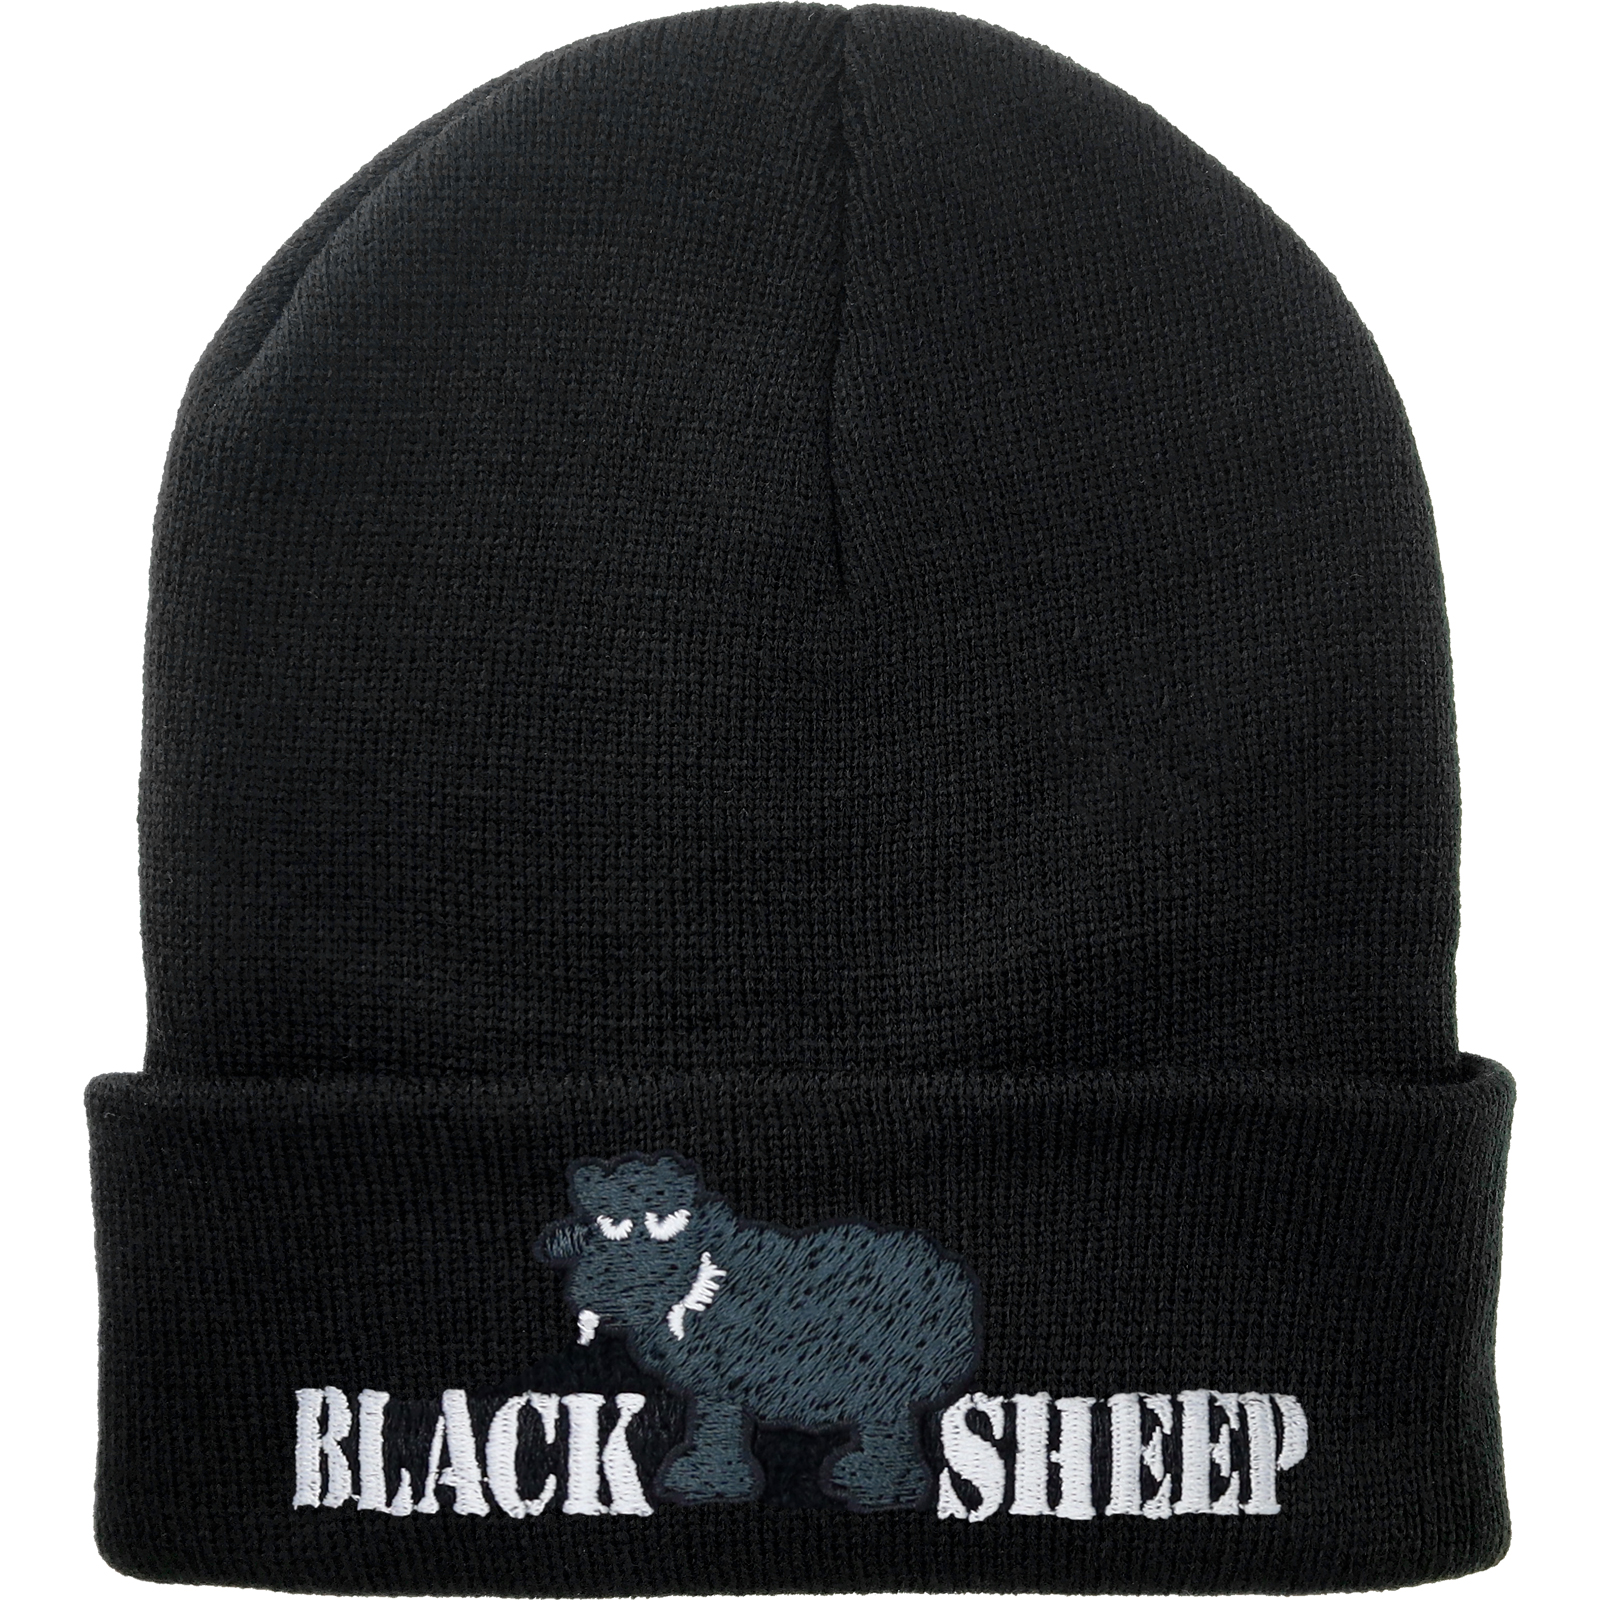 Black sheep - Strickmütze